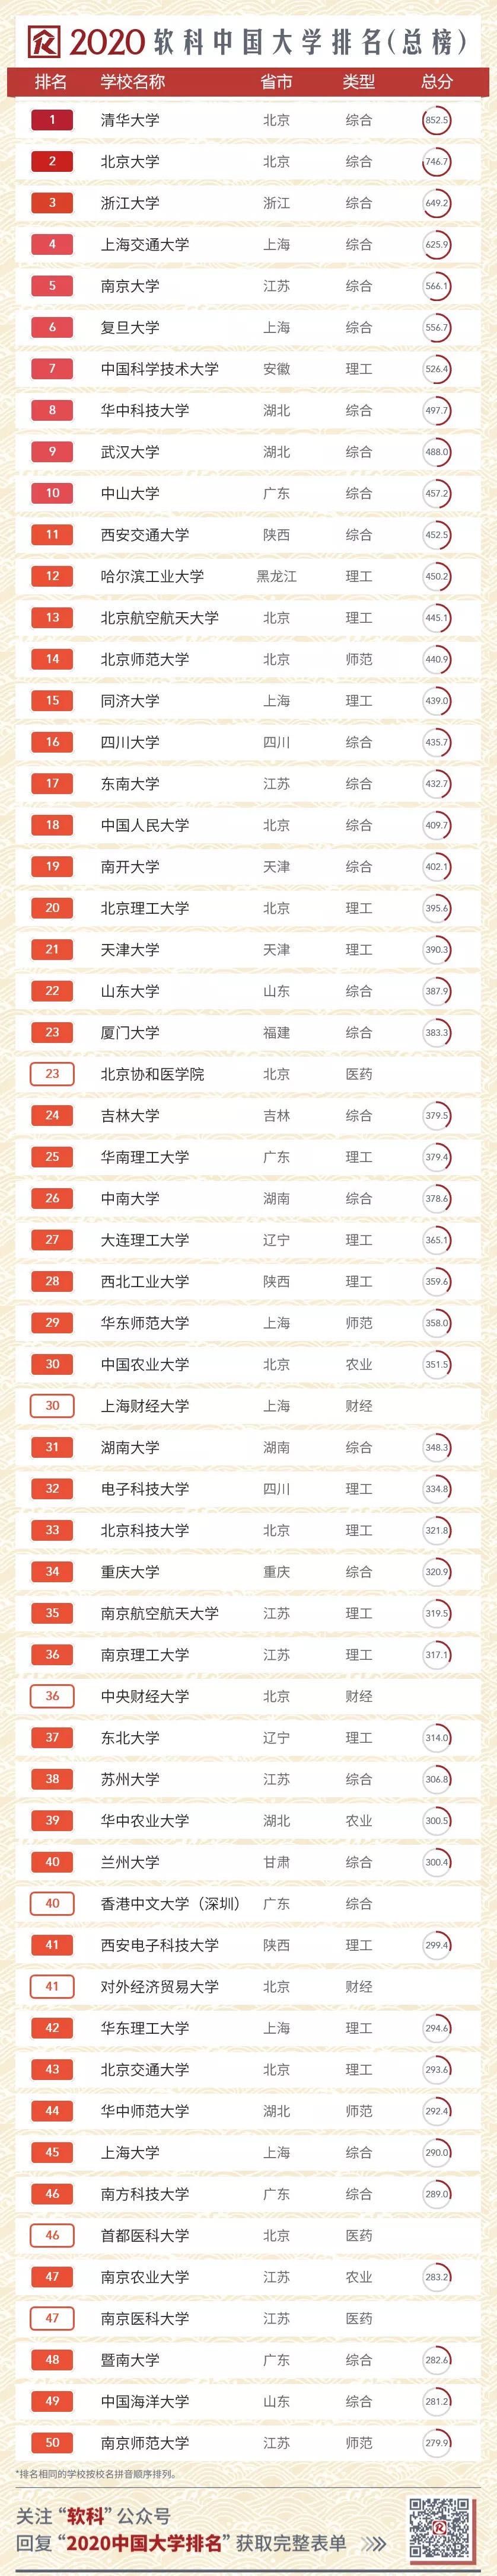 河师大排名2020年206排名_2020中国最好大学排名新鲜公布,武汉大学挺进前